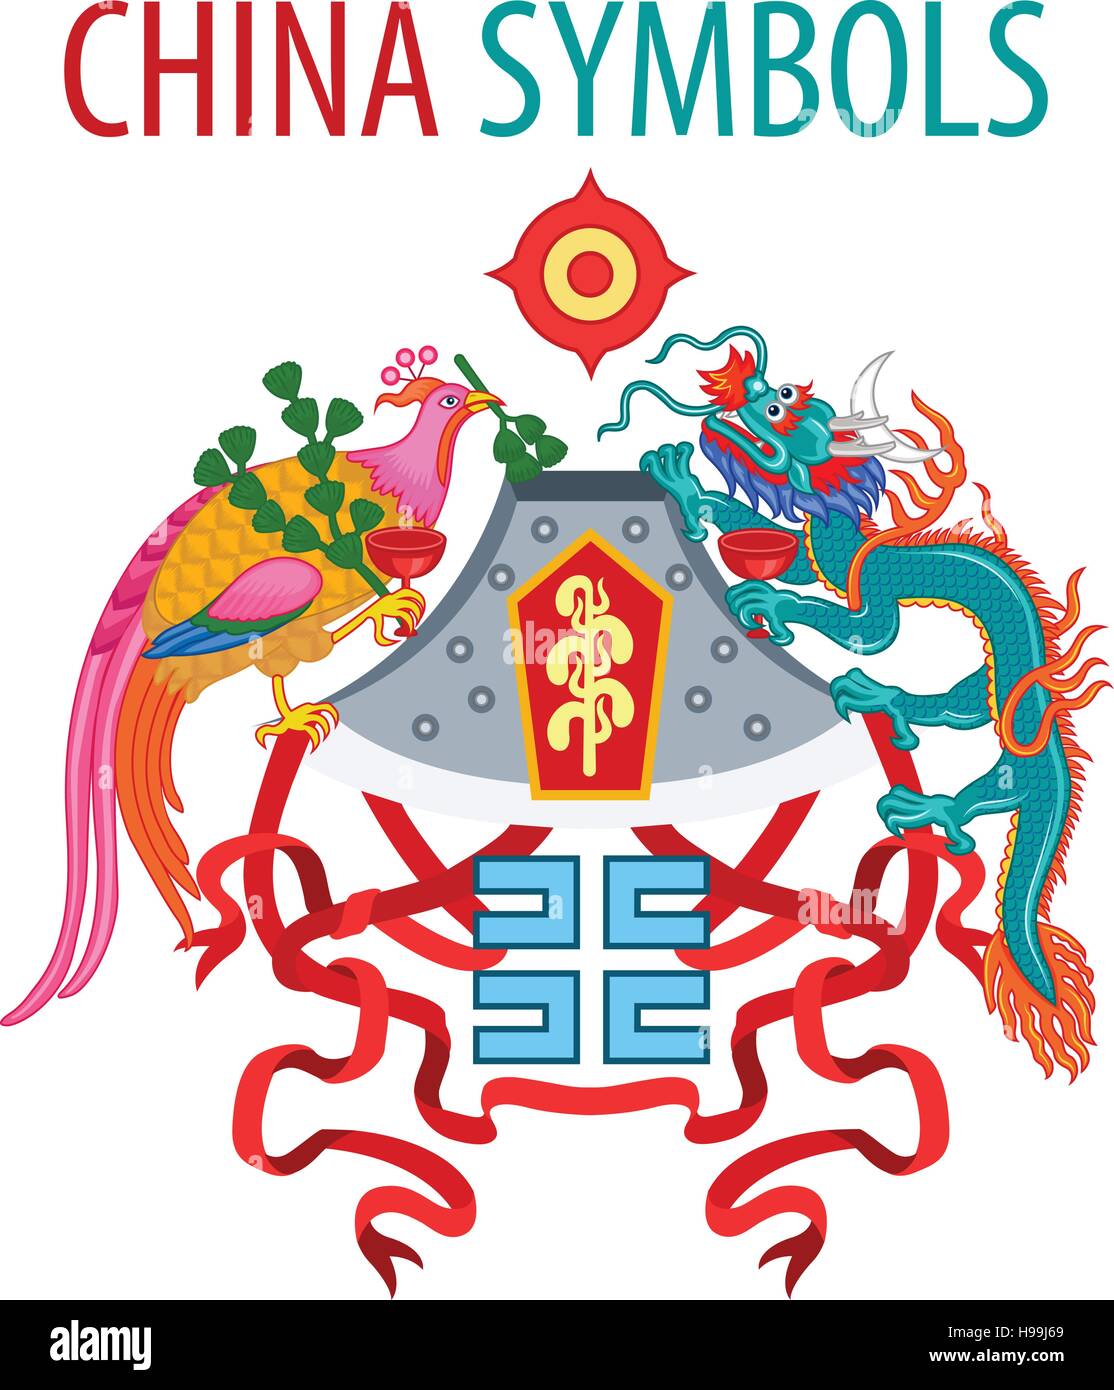 Cartão De Identidade Com Emblema Nacional Da China Foto de Stock - Imagem  de identifique, sinal: 168724086